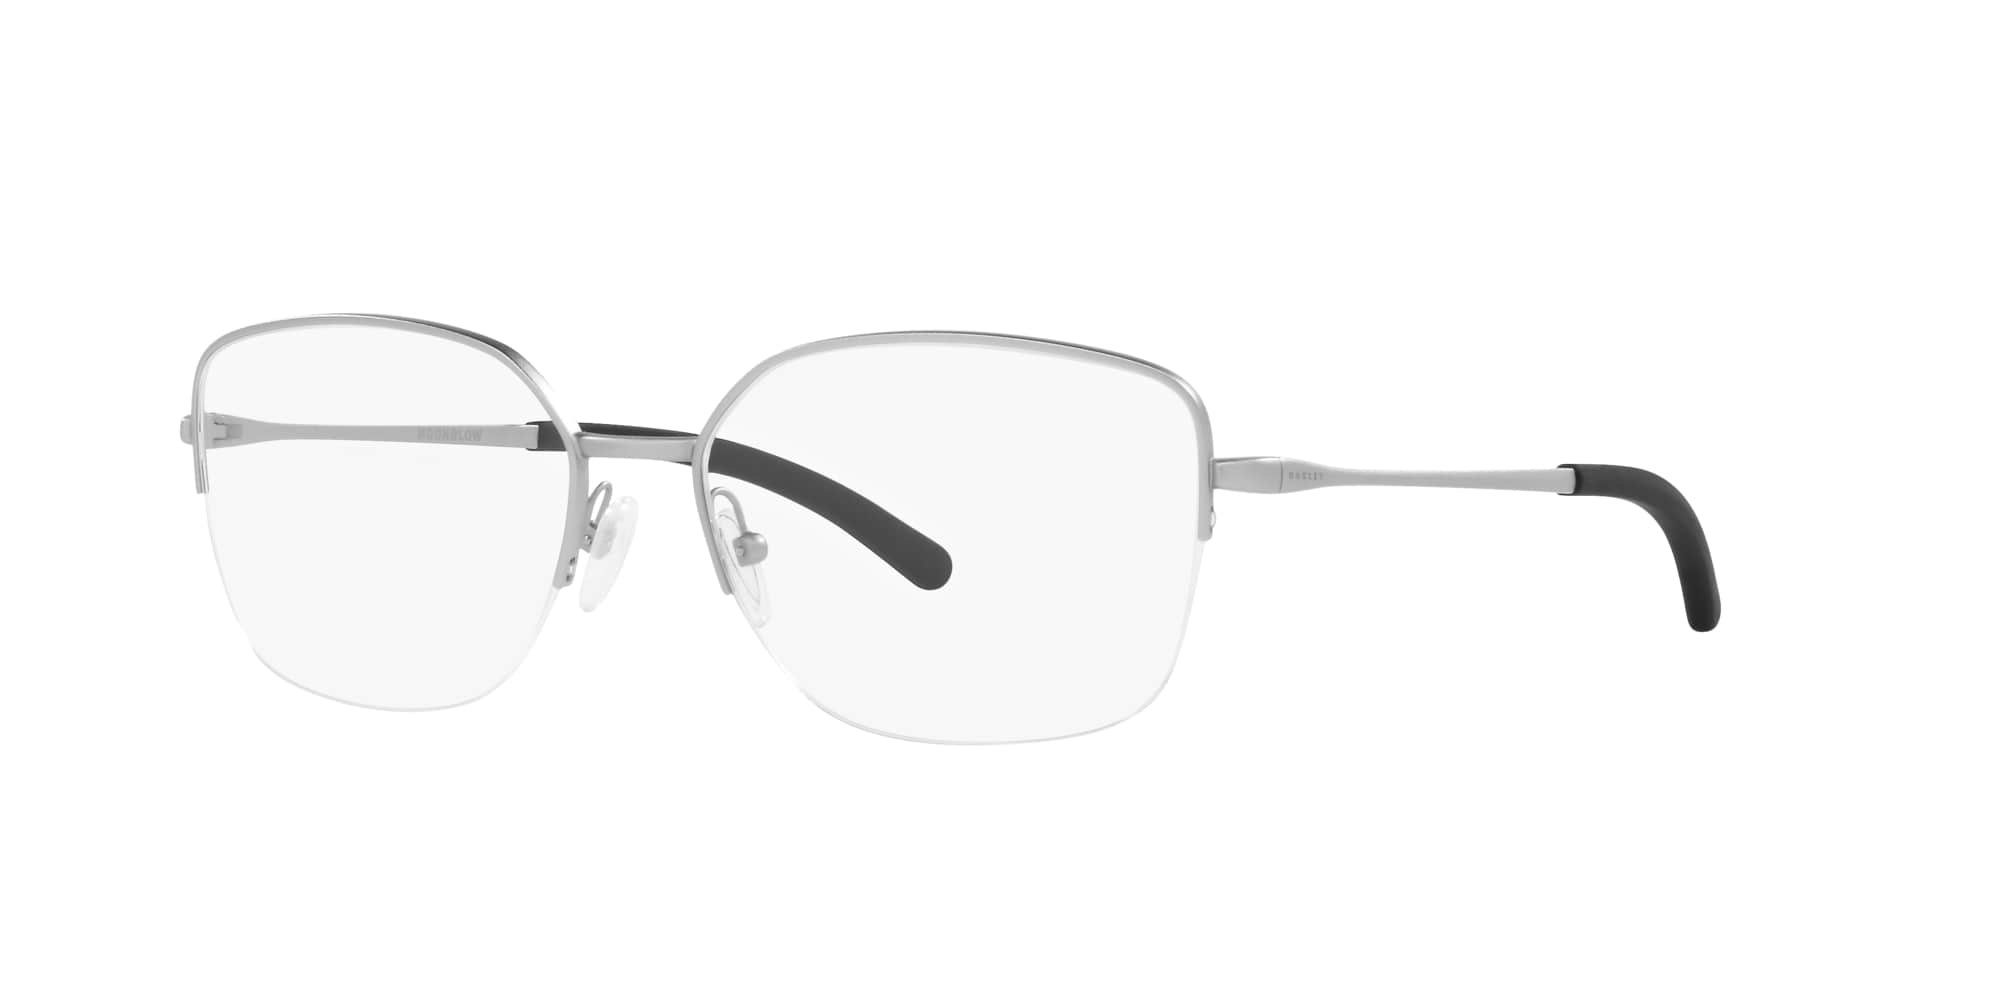 Das Bild zeigt die Korrektionsbrille OX3006 300604 von der Marke Oakley  in  chrom satiniert.